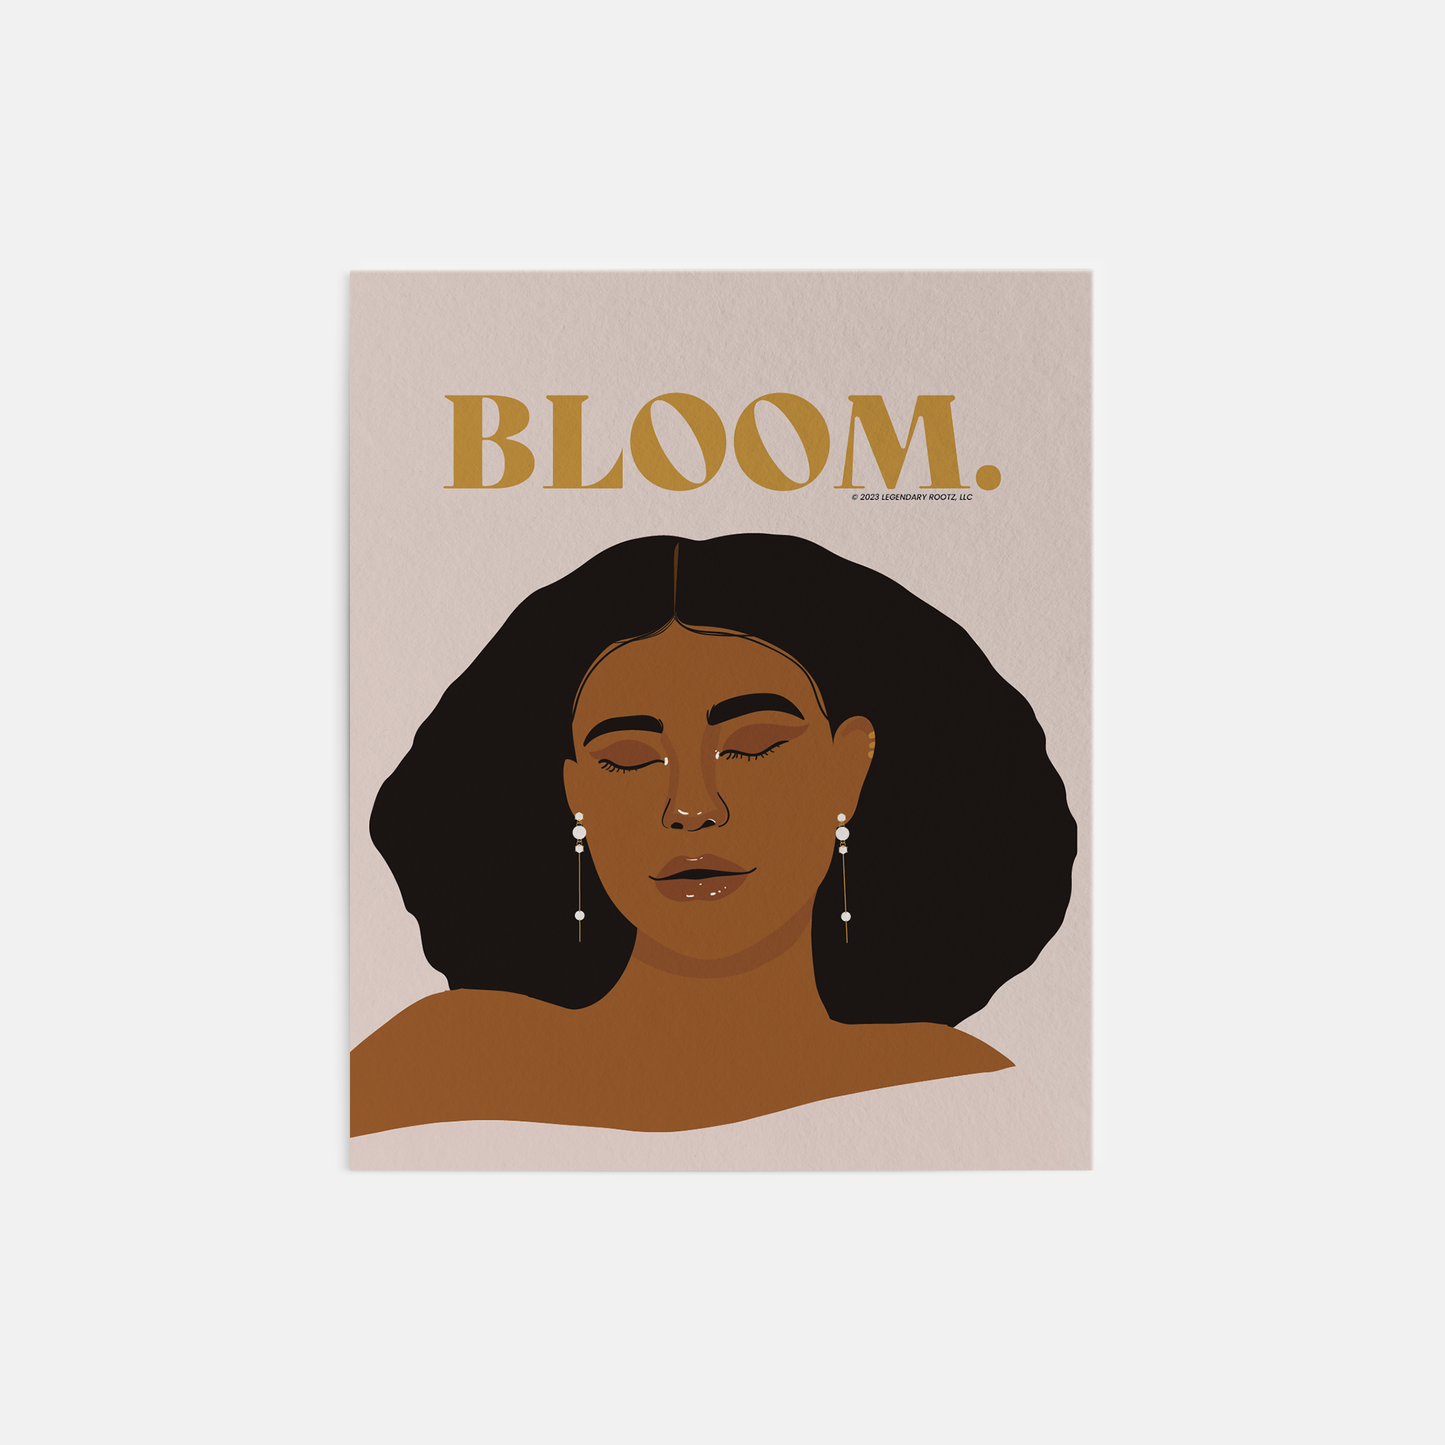 Her Bloom | Digital Art Print